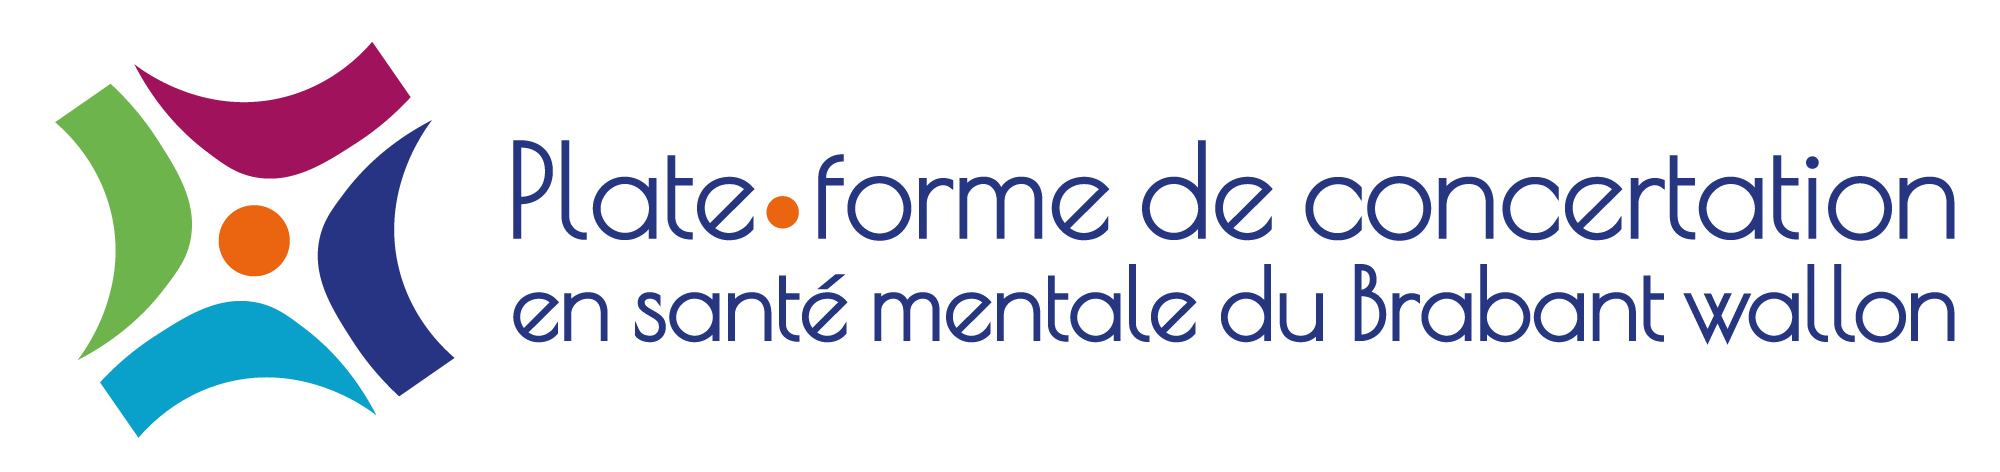 Plate-forme de concertation en santé mentale du Brabant wallon Logo